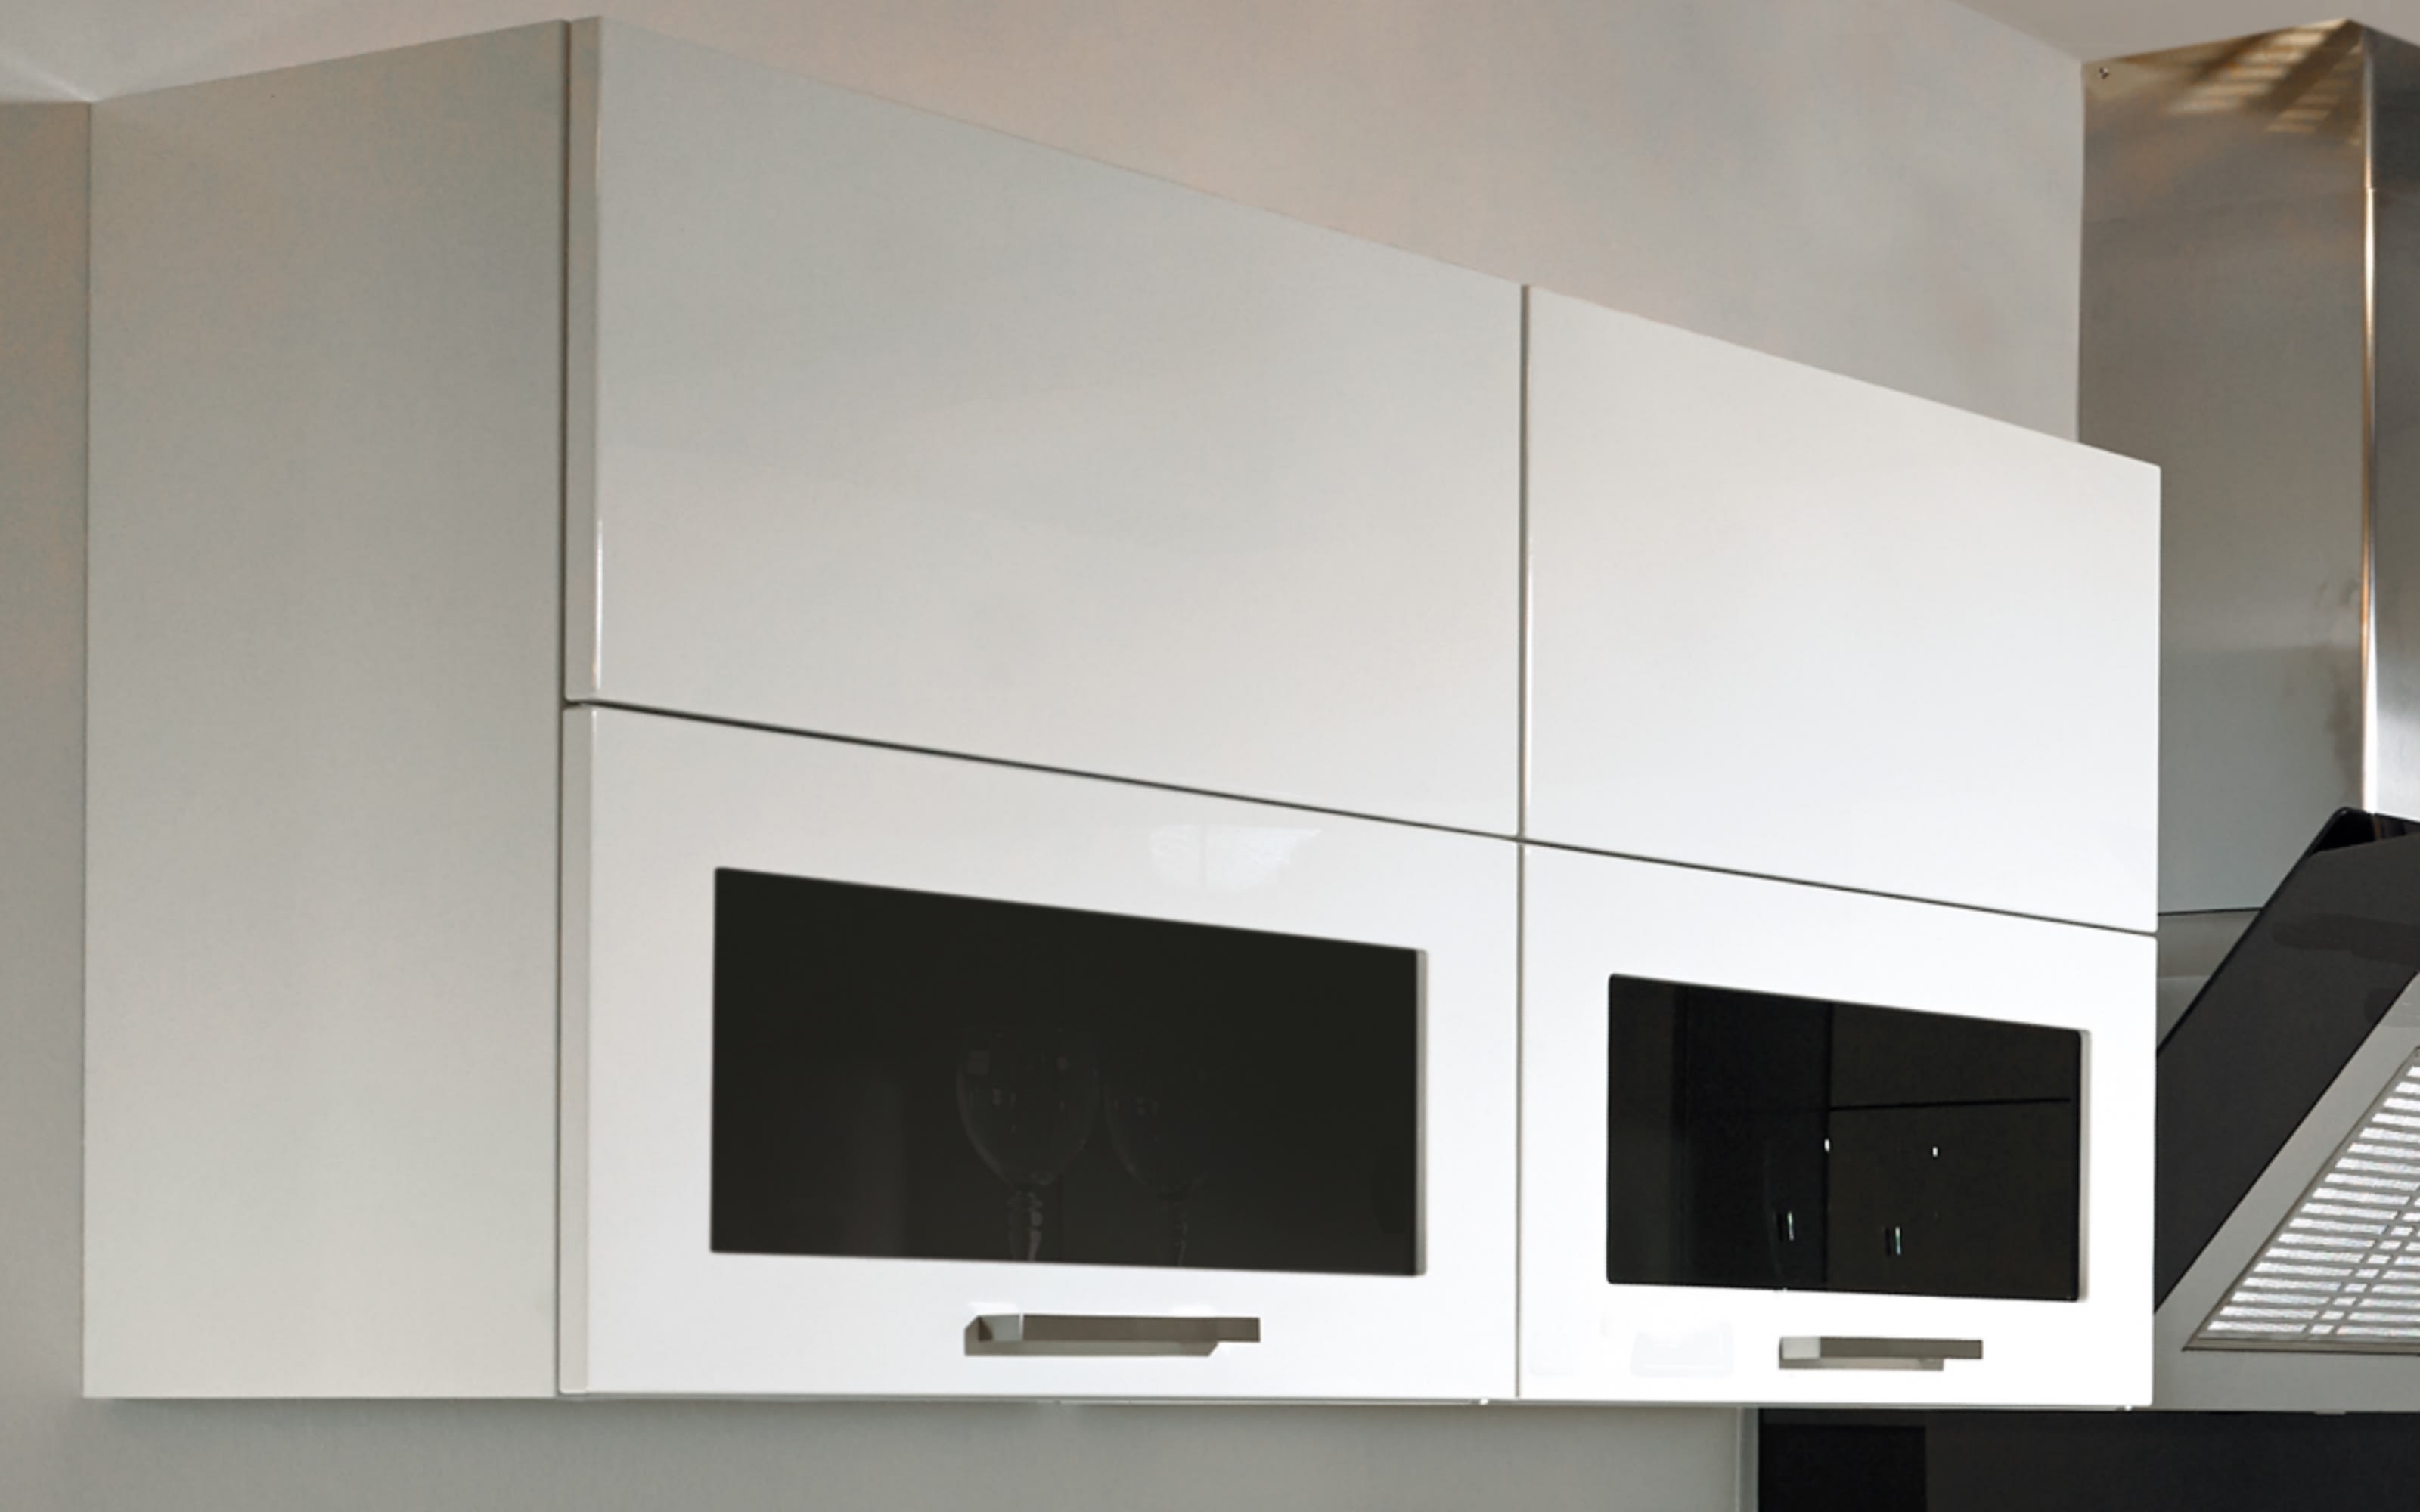 Einbauküche Lux, Lack weiß Hochglanz, inklusive Elektrogeräte und inklusive Siemens-Geschirrspüler